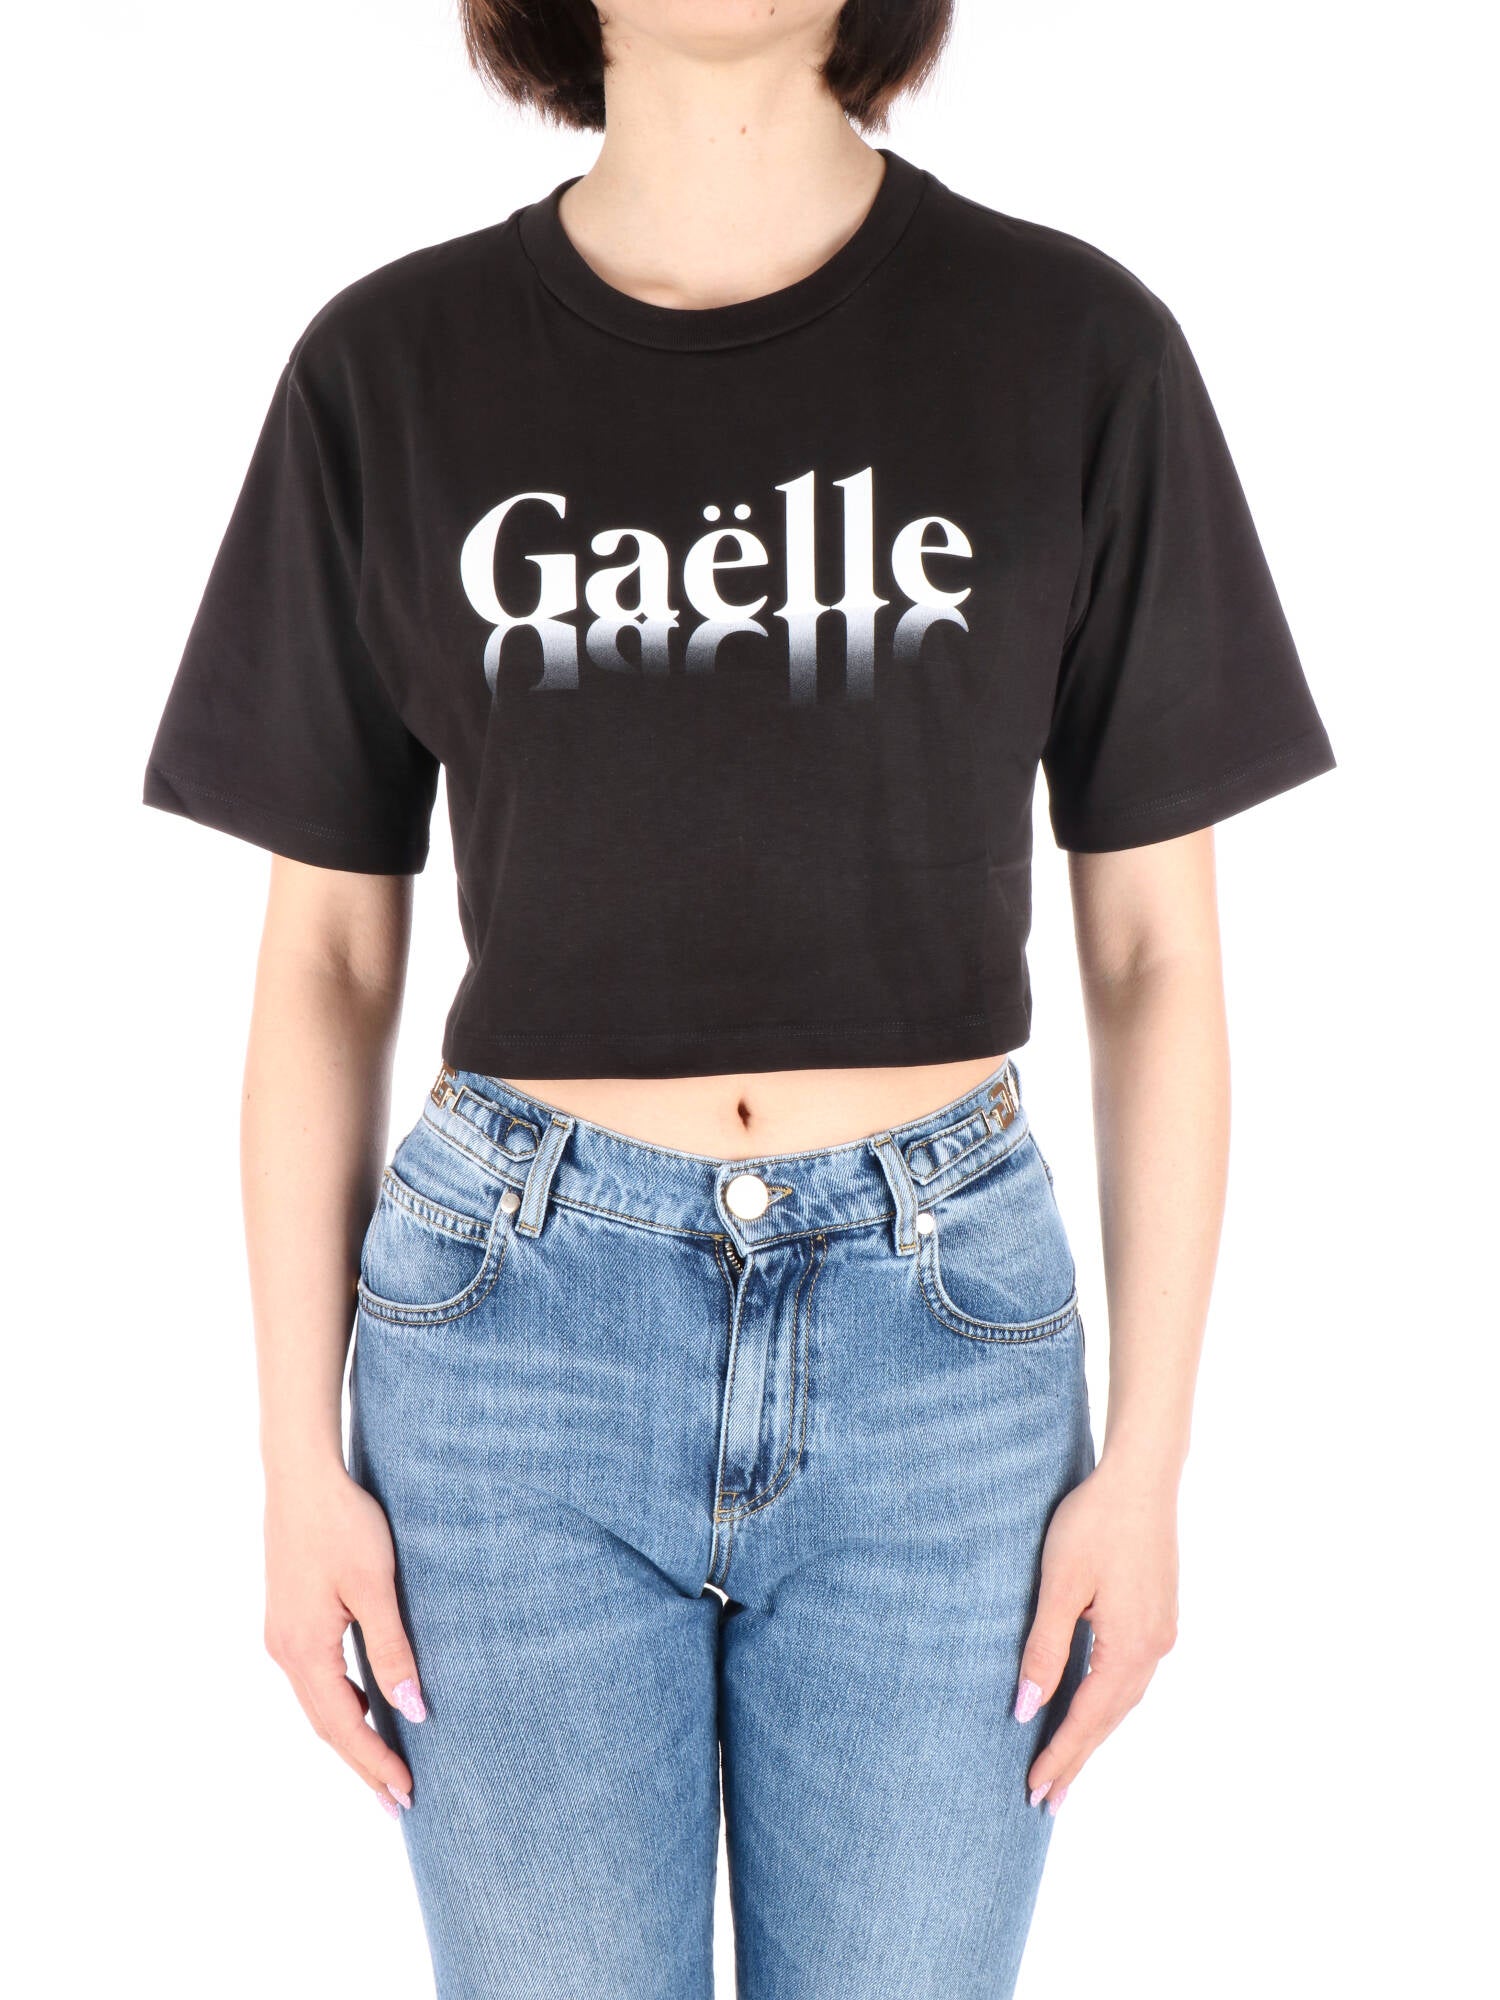 Gaelle Paris t-shirt crop nera